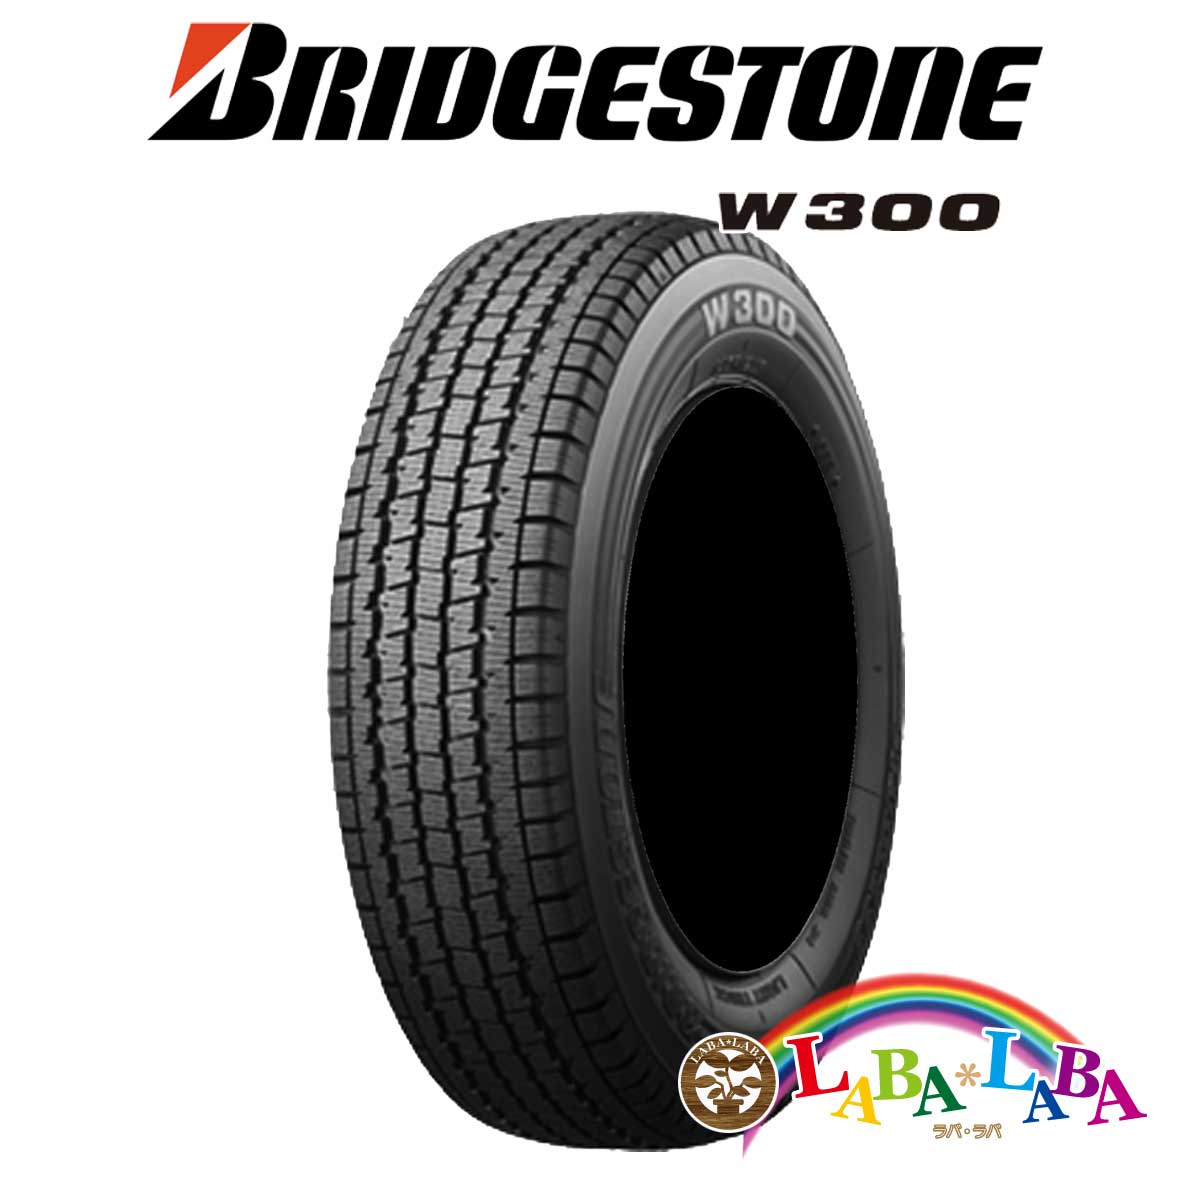 楽天市場 Bridgestone ブリヂストン W300 145r12 6pr スタッドレス 軽トラ バン 4本セット 19年製 ラバラバ 楽天市場店